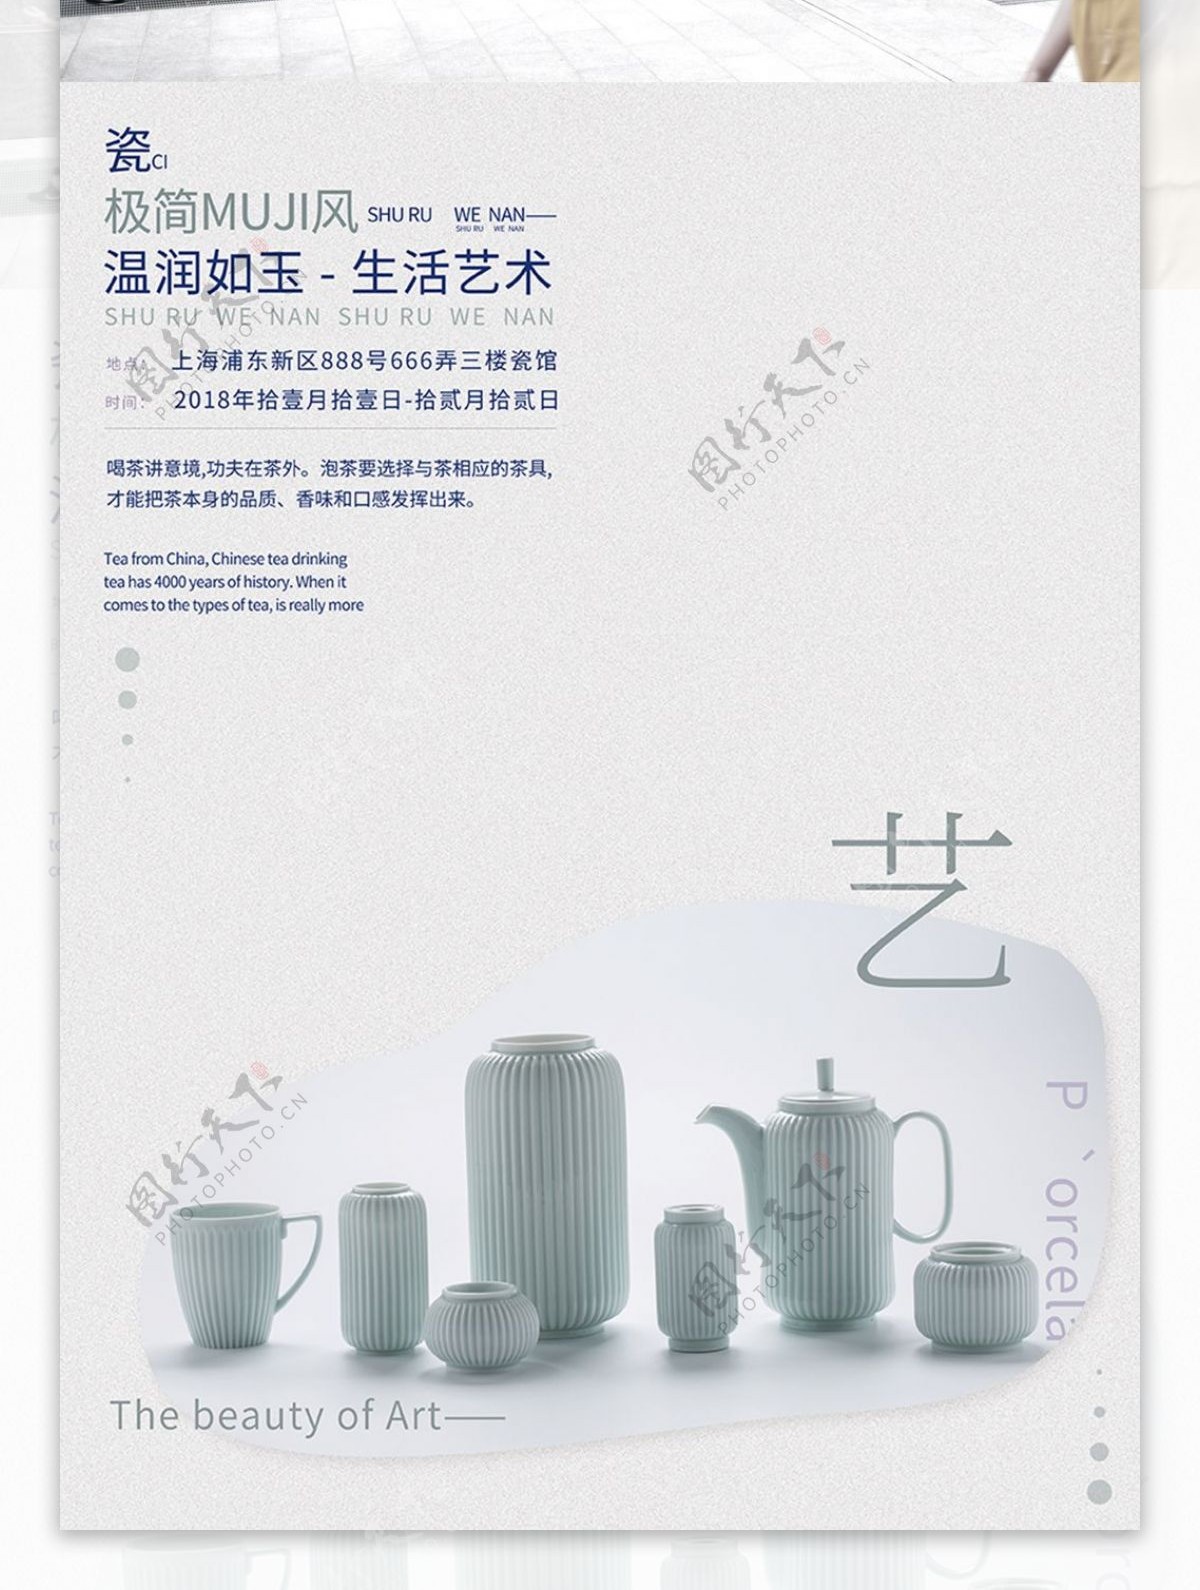 极简MUJI风茶具瓷器简约大气商业海报